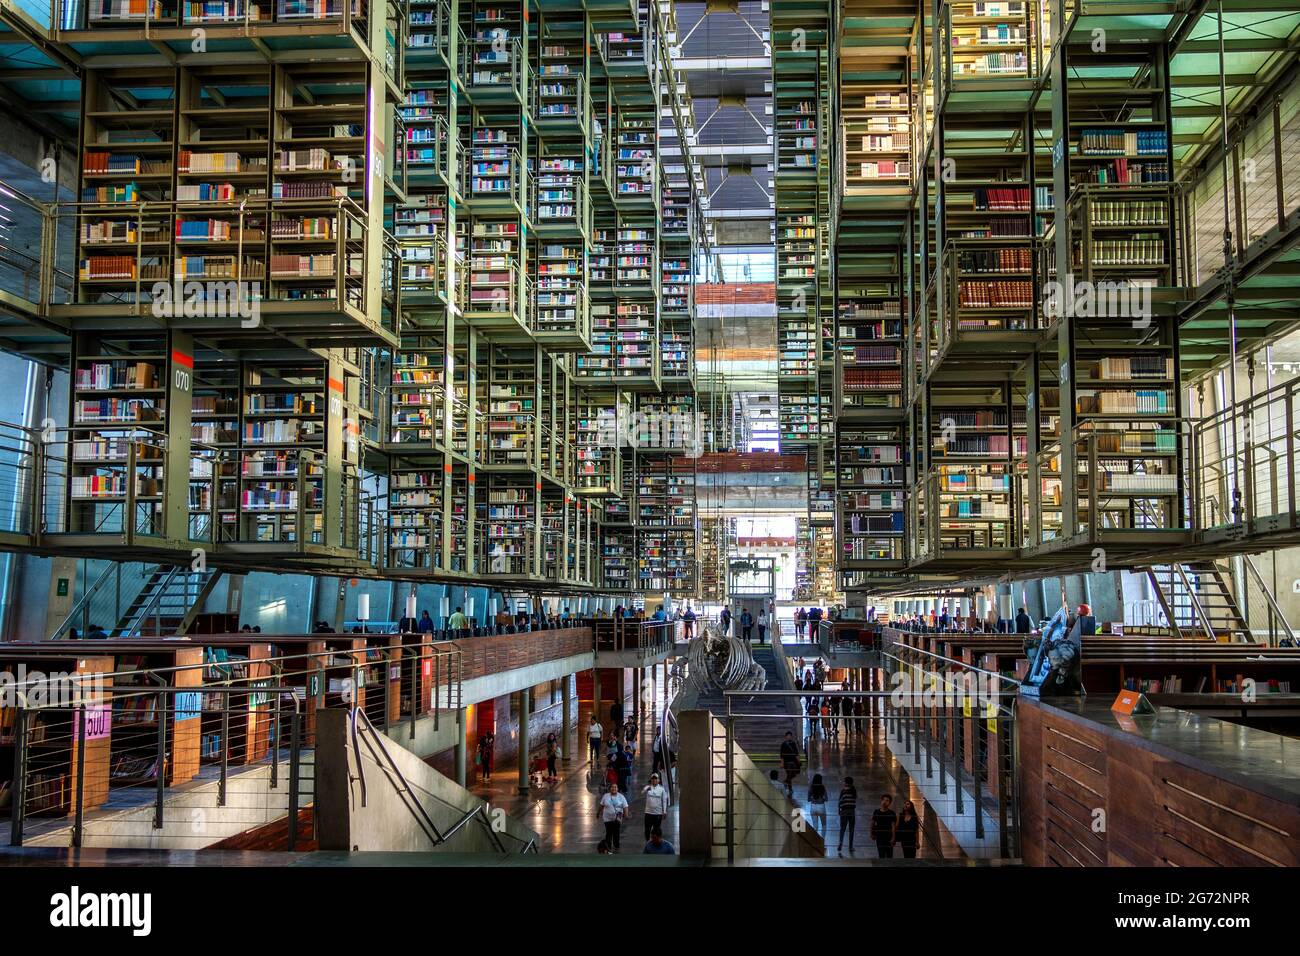 Interiores de la histórica Biblioteca Vasconcelos (en español: Biblioteca Vasconcelos) en el centro de la Ciudad de México, México. Foto de stock